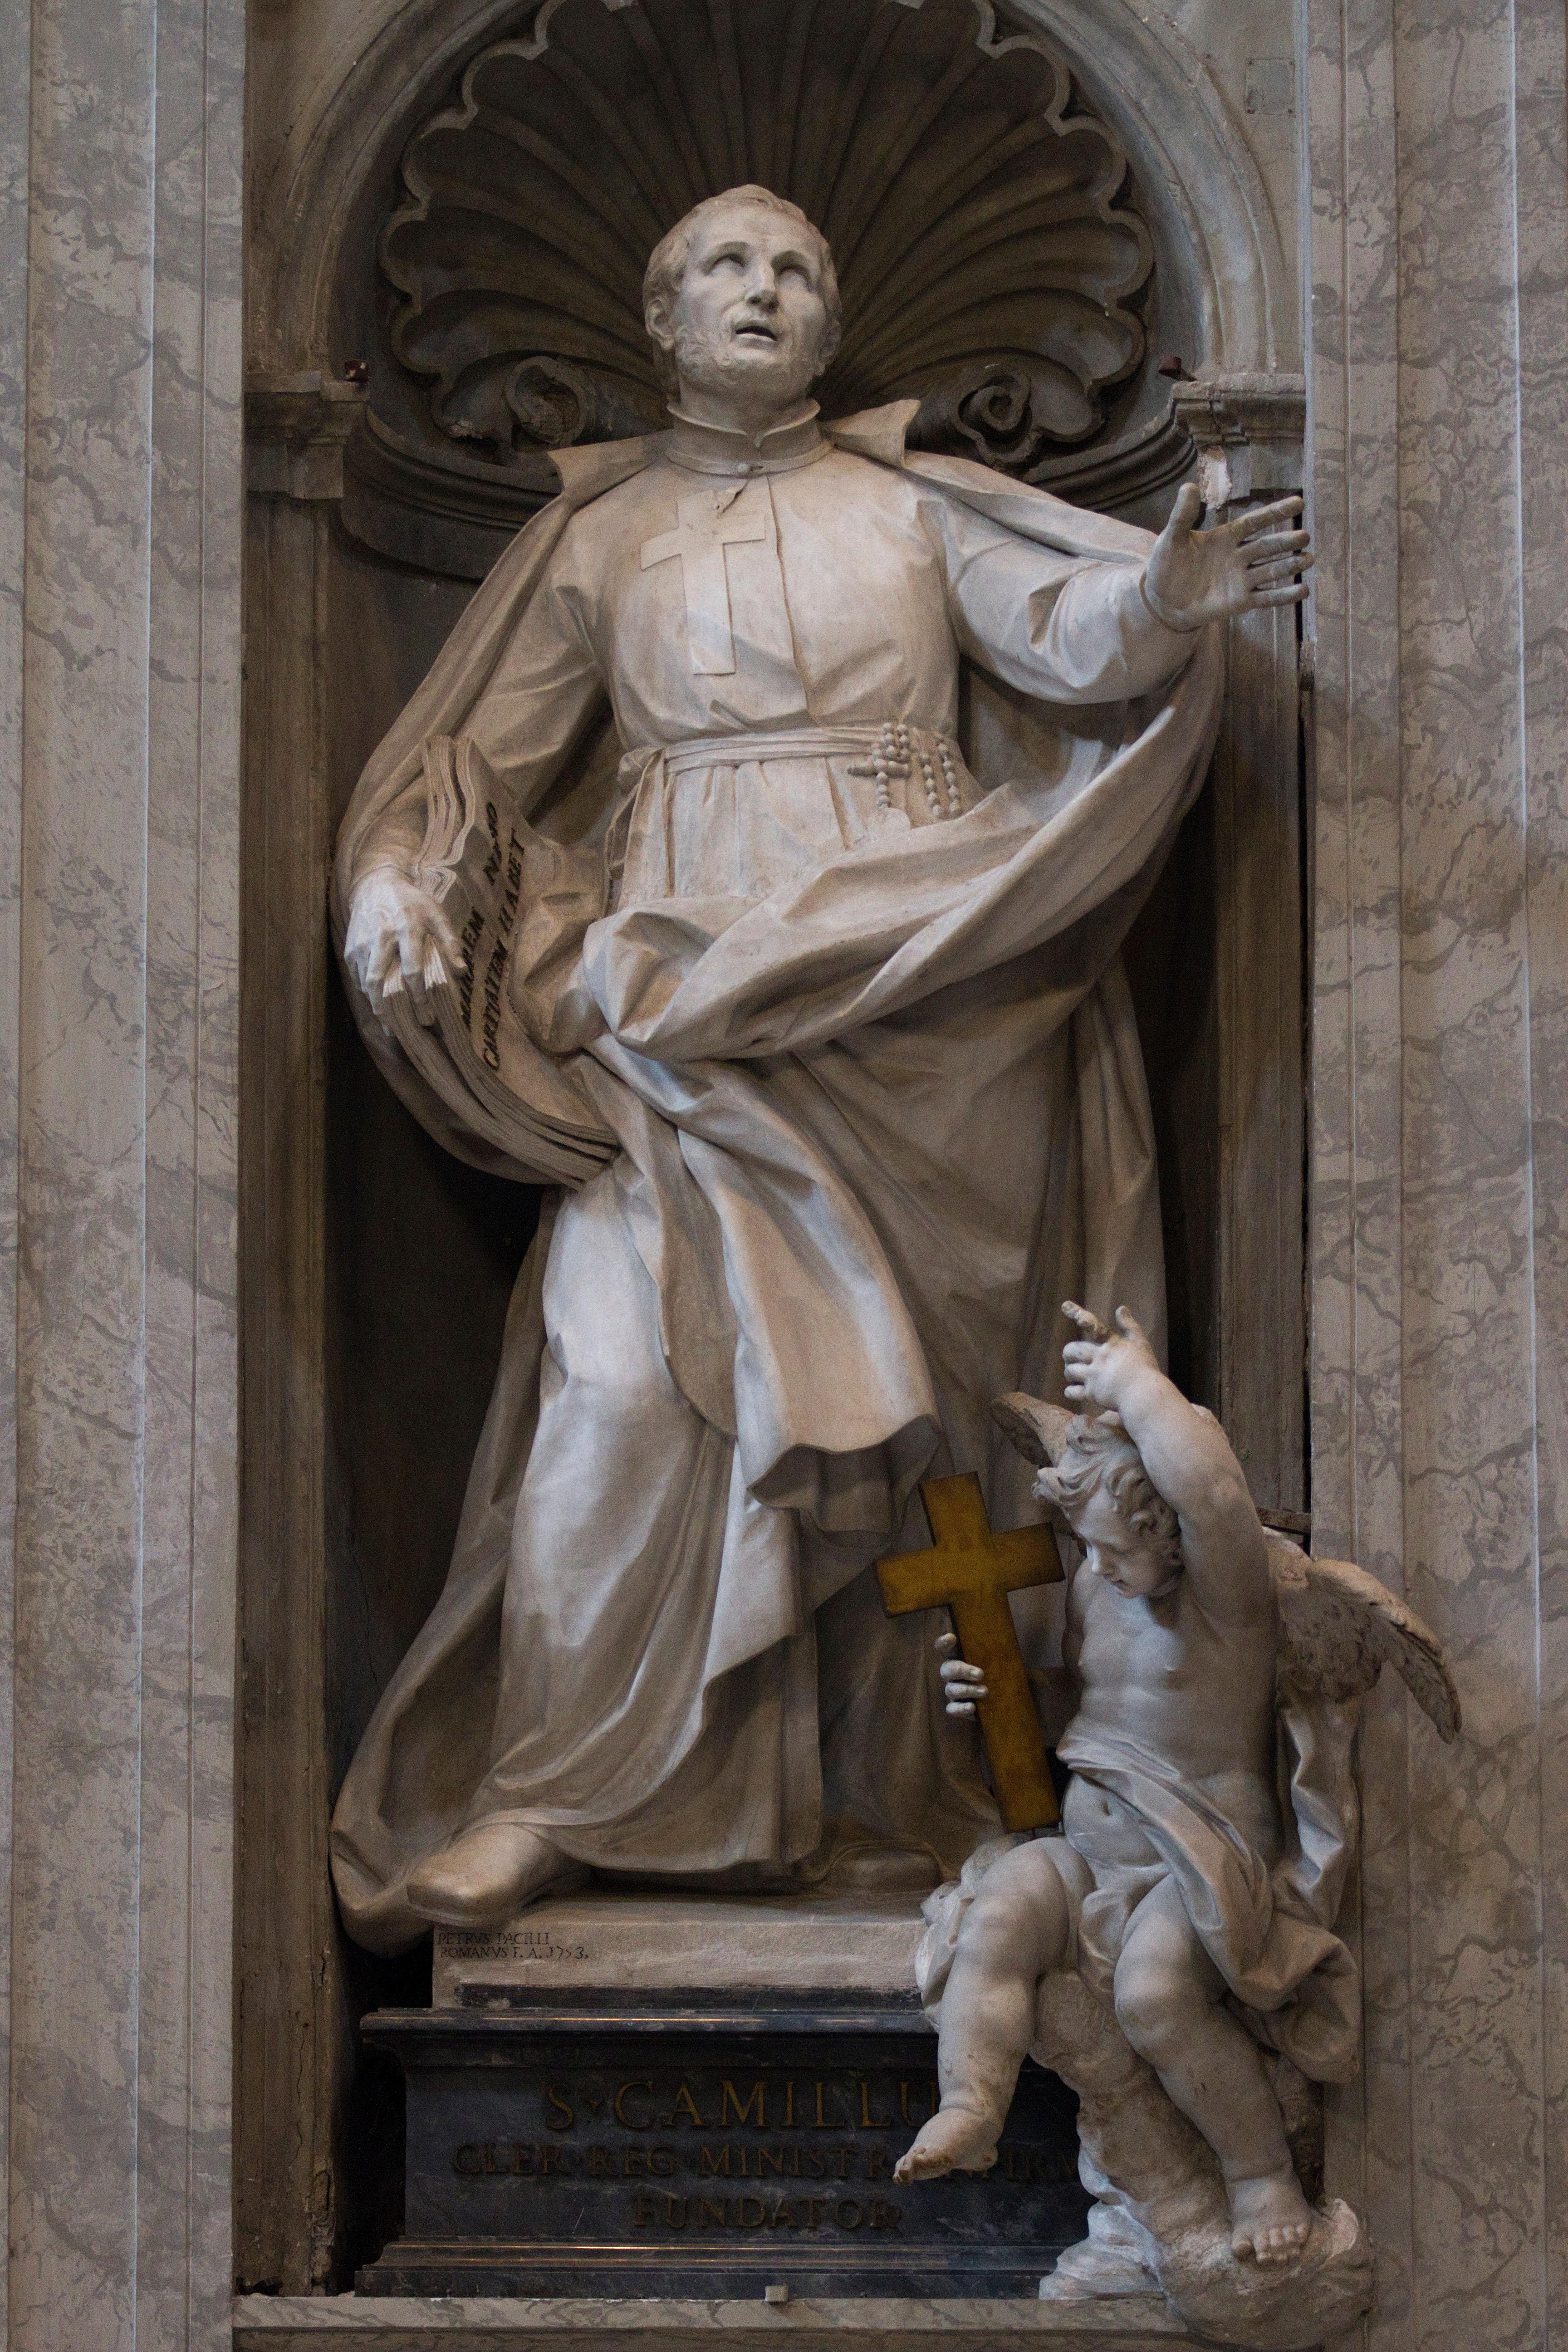 Ce bozetto en terre cuite d'une remarquable fluidité a été réalisé en vue de la plus importante commande publique de Pietro Pacilli, une grande statue en marbre de San Camillo de Lellis pour la nef de la basilique Saint-Pierre de Rome. Avec son